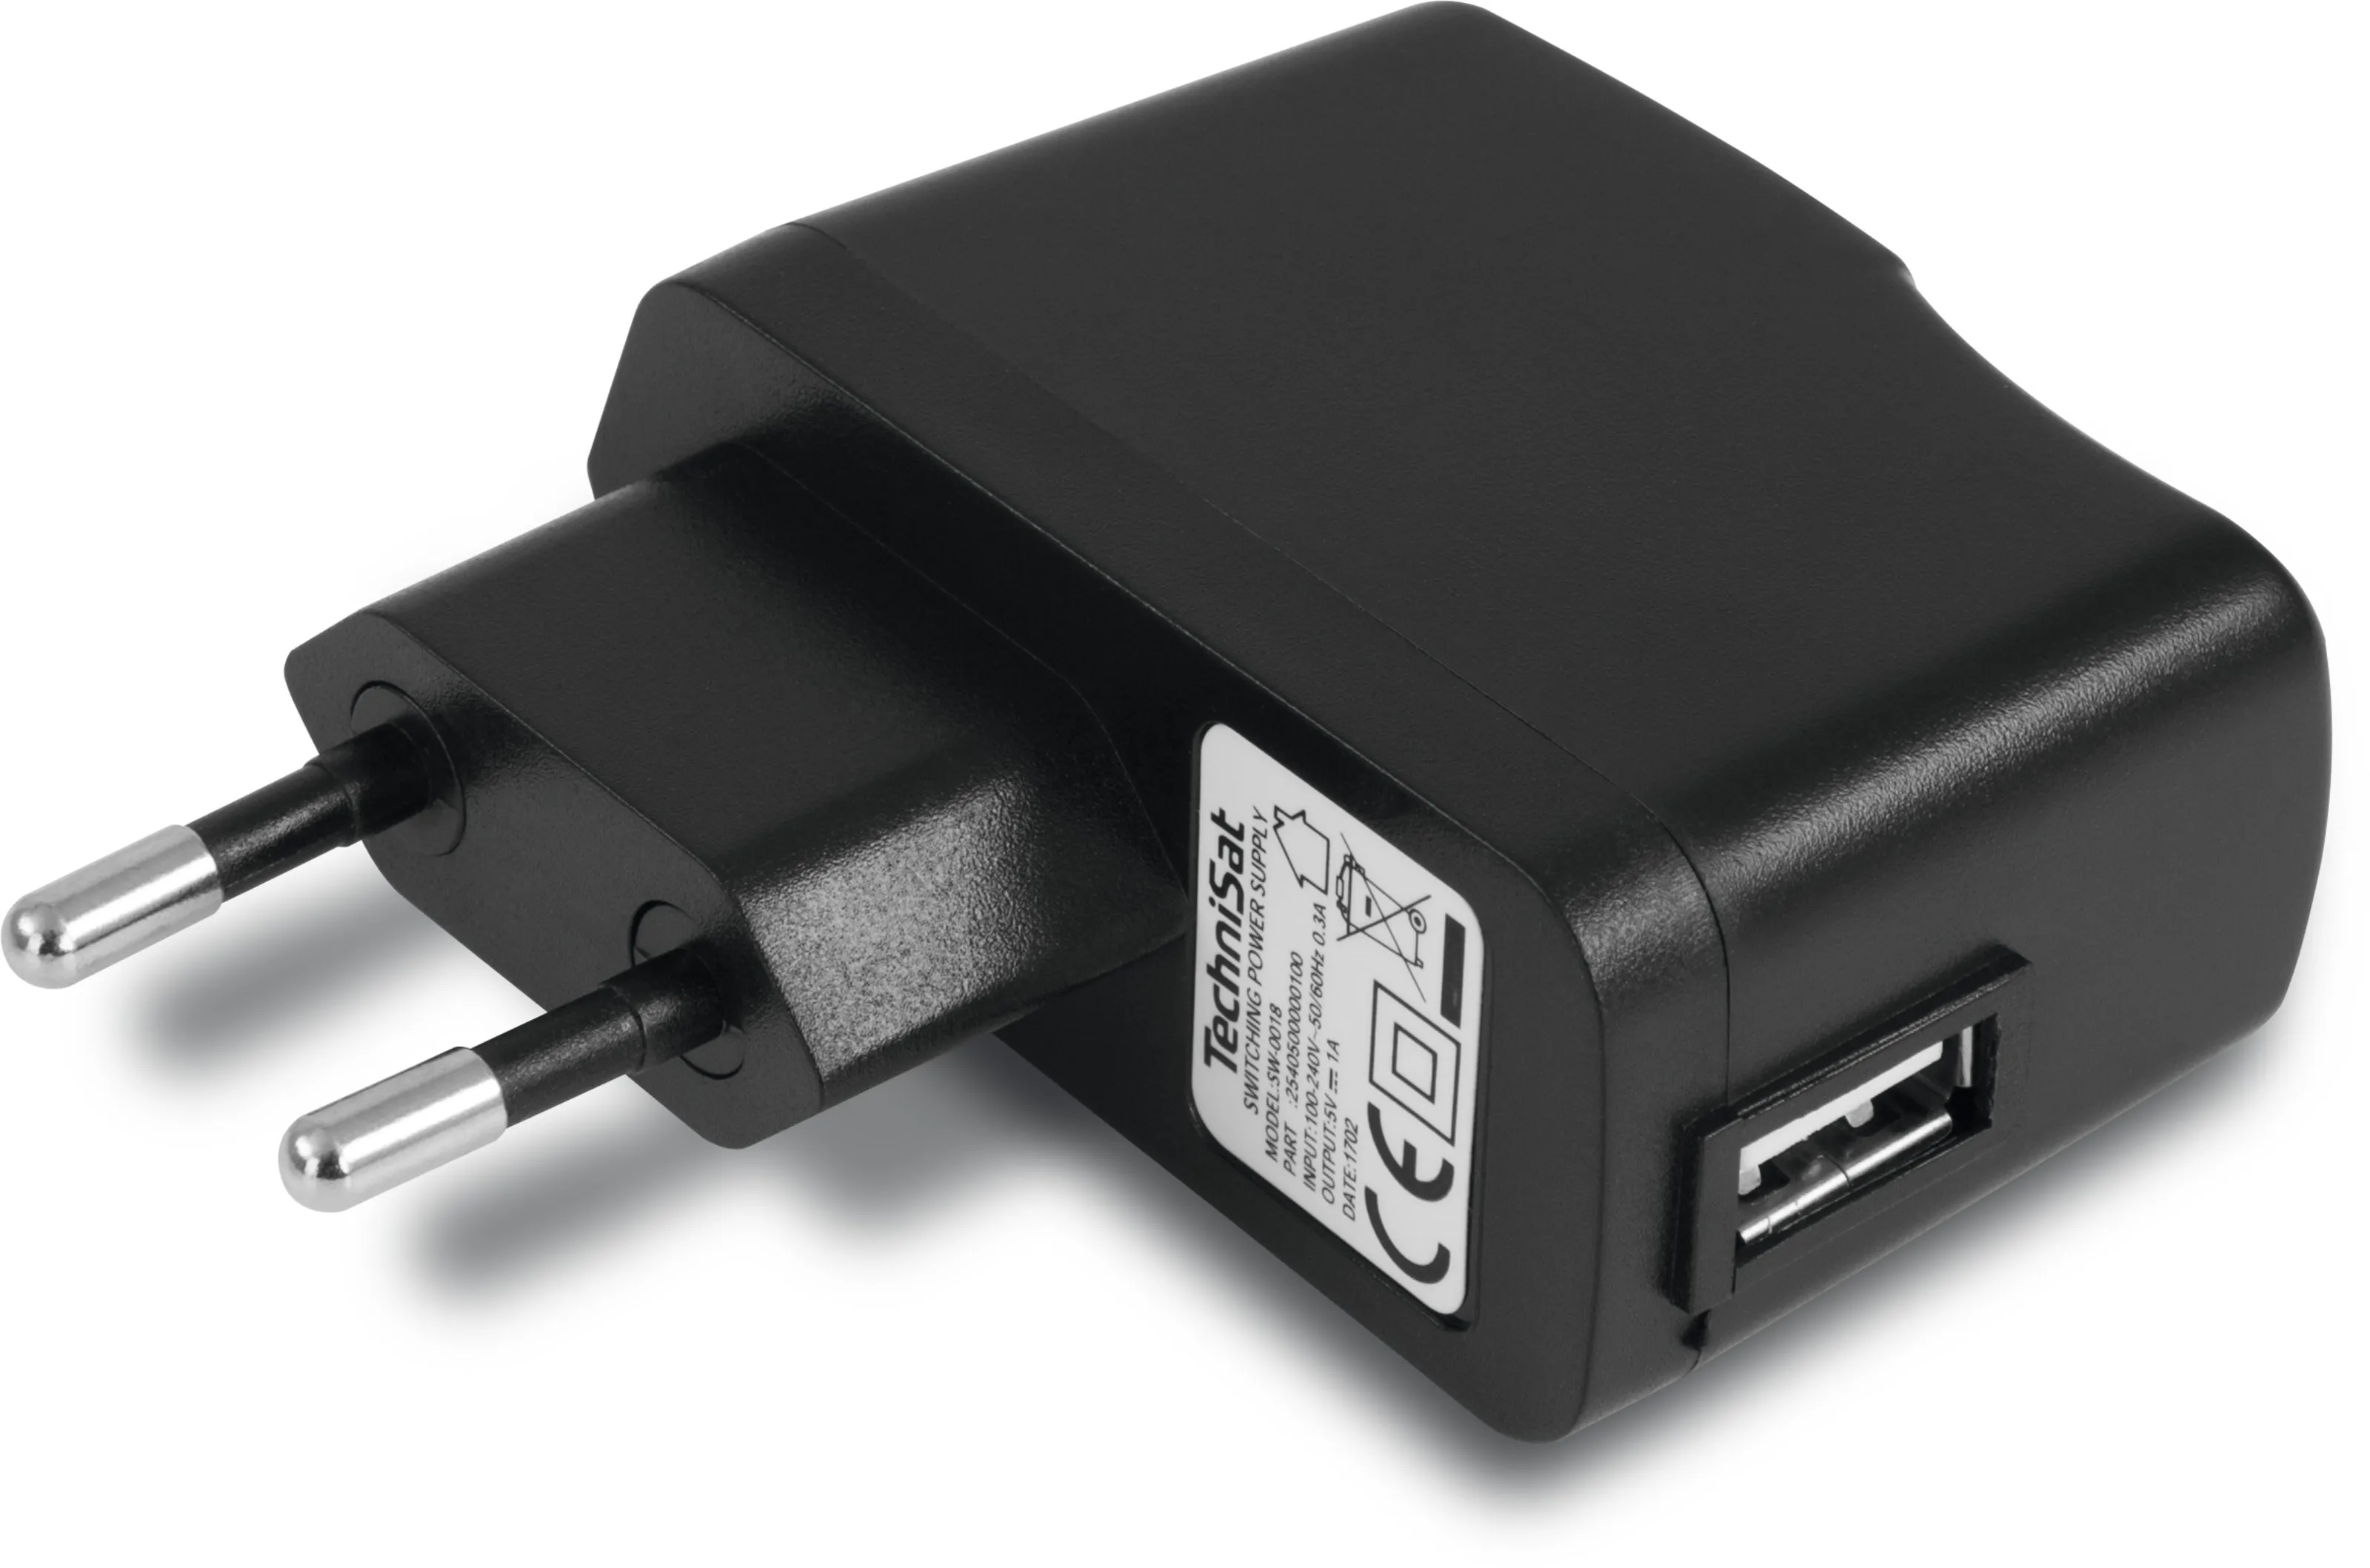 USB-Netzteil DC 5 V / 1 A